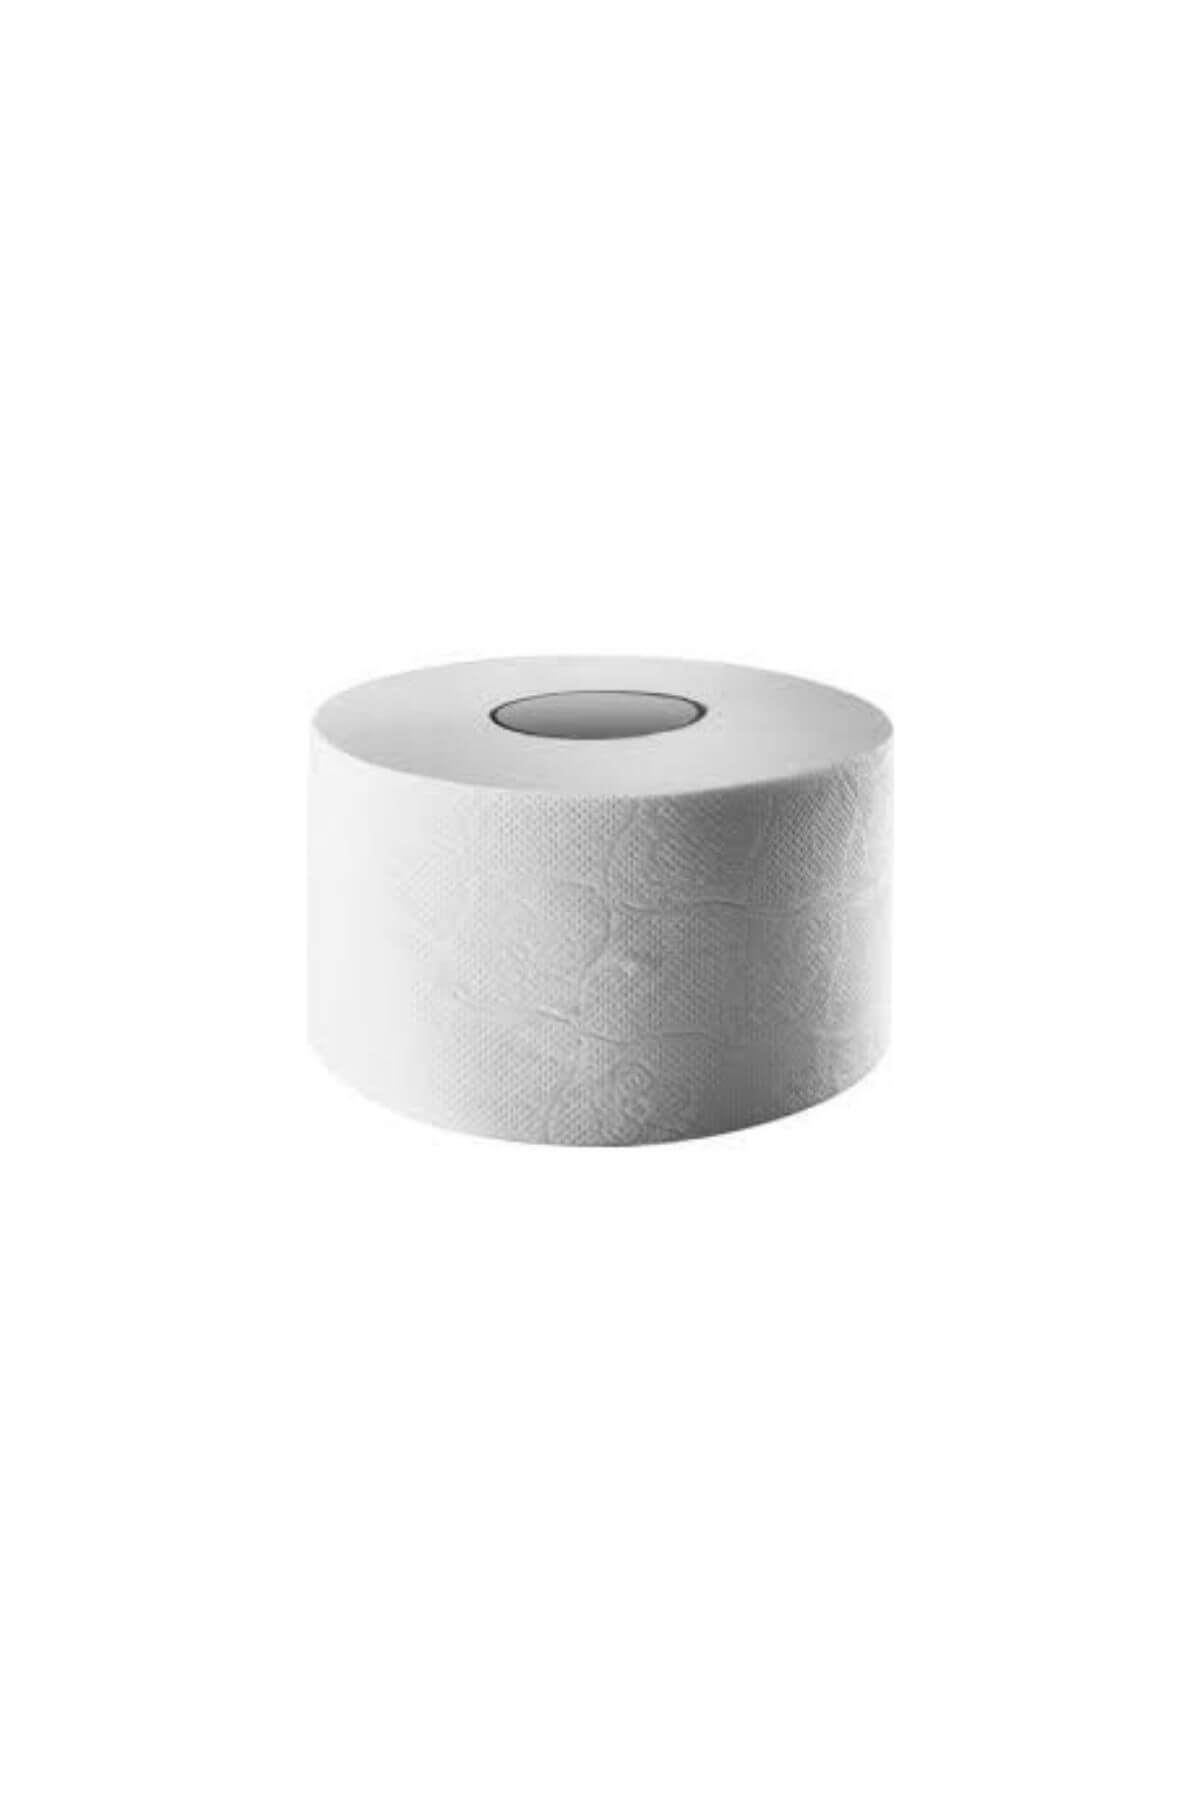 T&T Tedarik Mini Jumbo Tuvalet Kağıdı 12'li